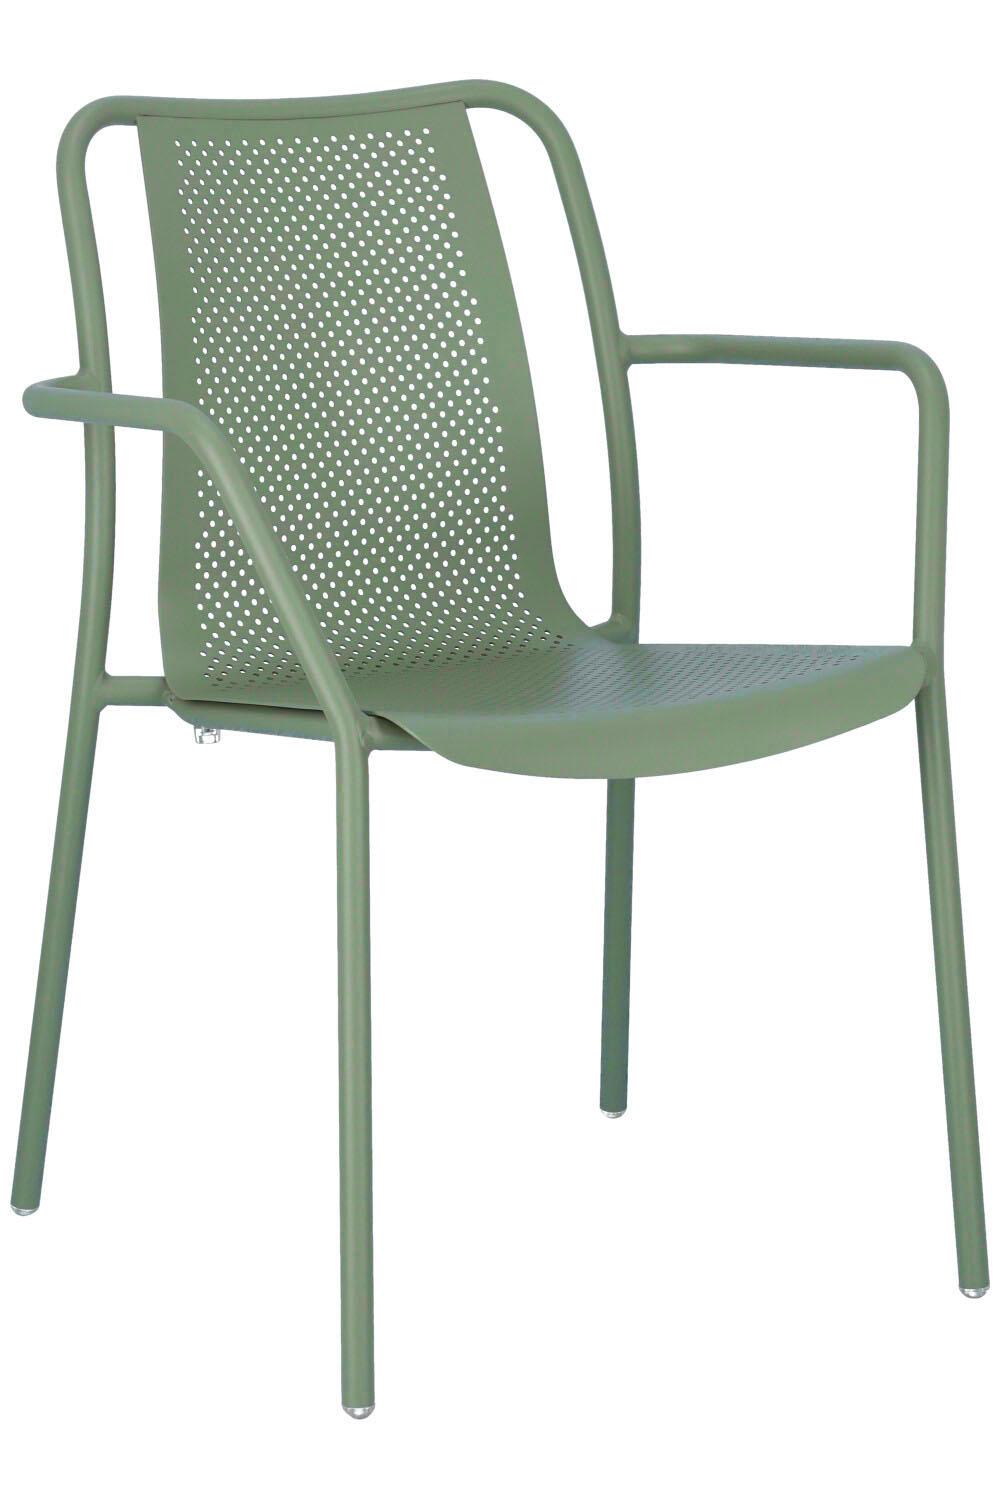 arm chair Marlis